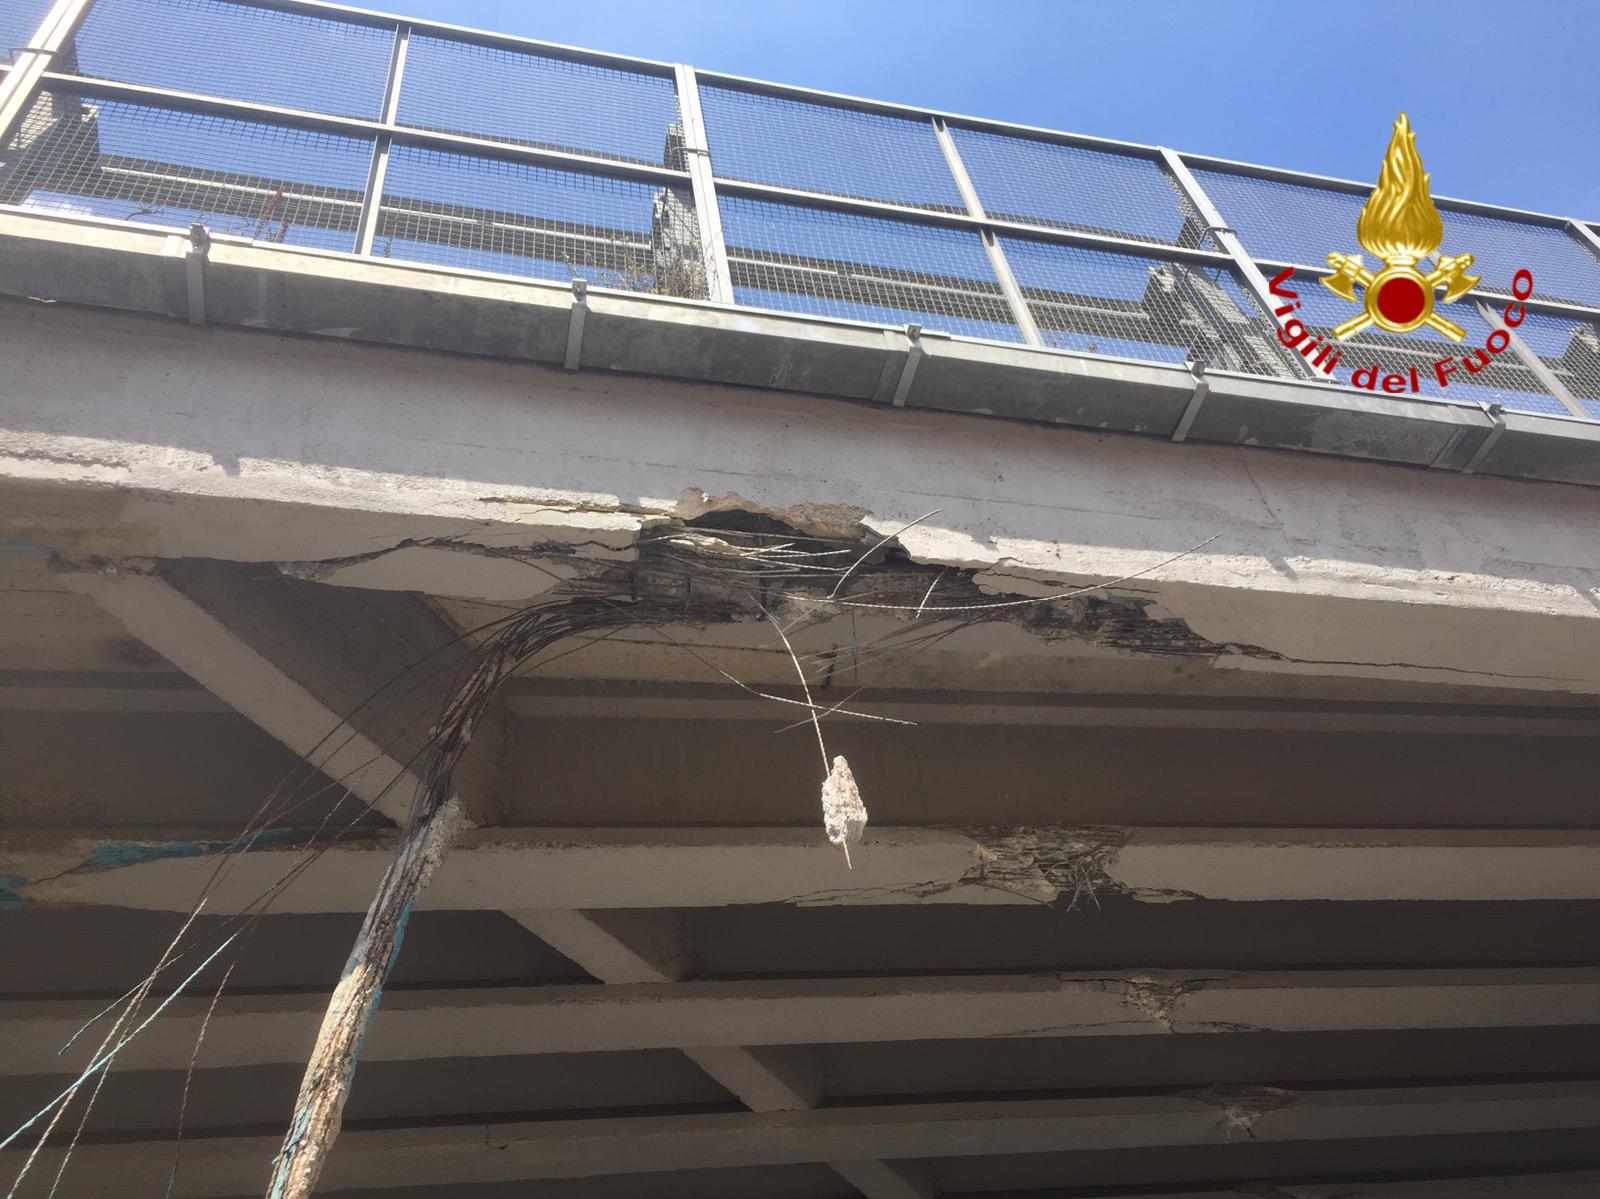 Mezzo colpisce ponte: danni alla struttura